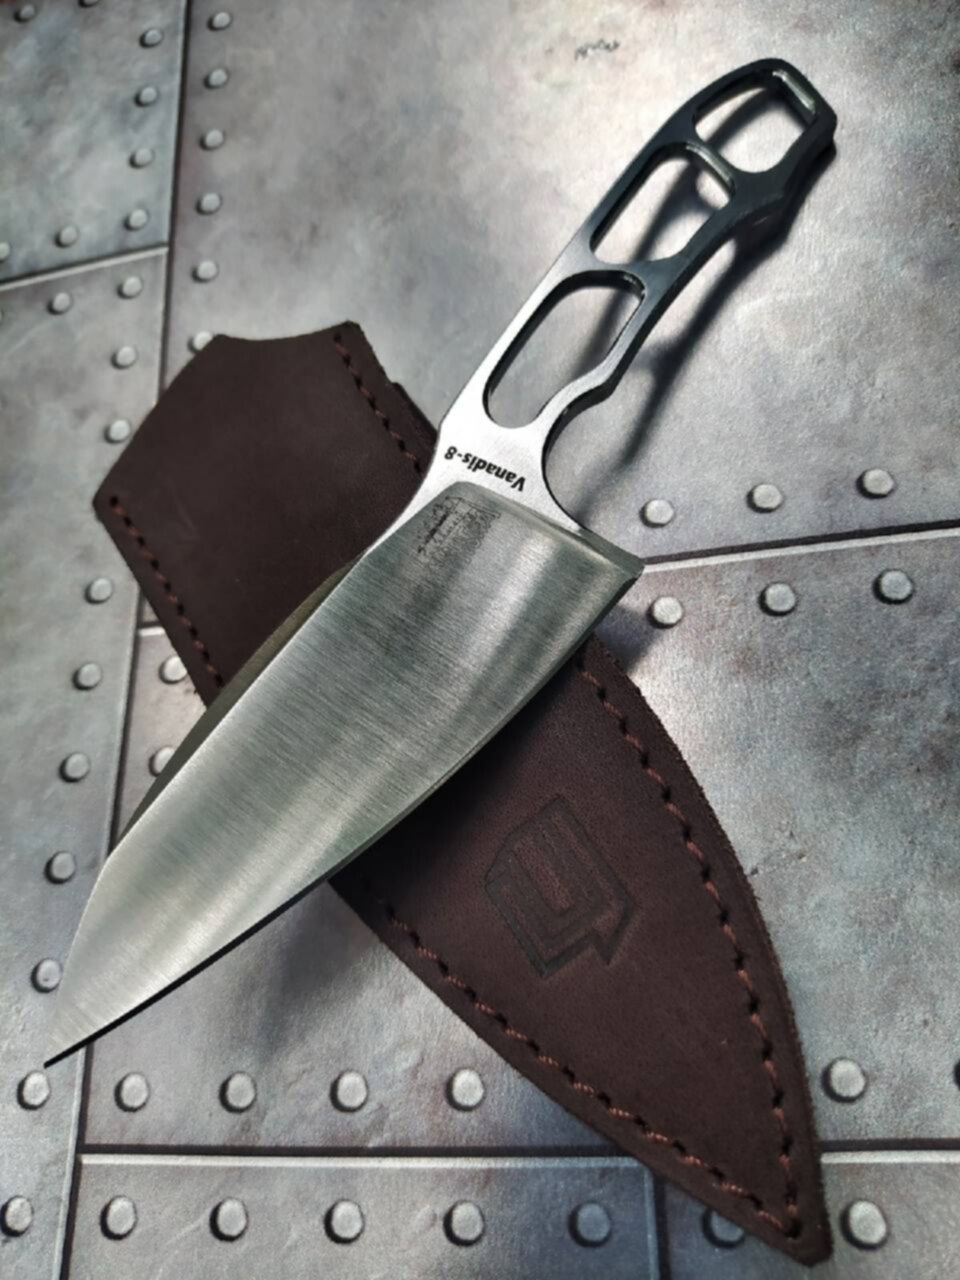 Мастерская ножи купить. Мастерская ножей. Ножевая мастерская. •Ножевая мастерская 7/ножей•. Первый цех ножи.